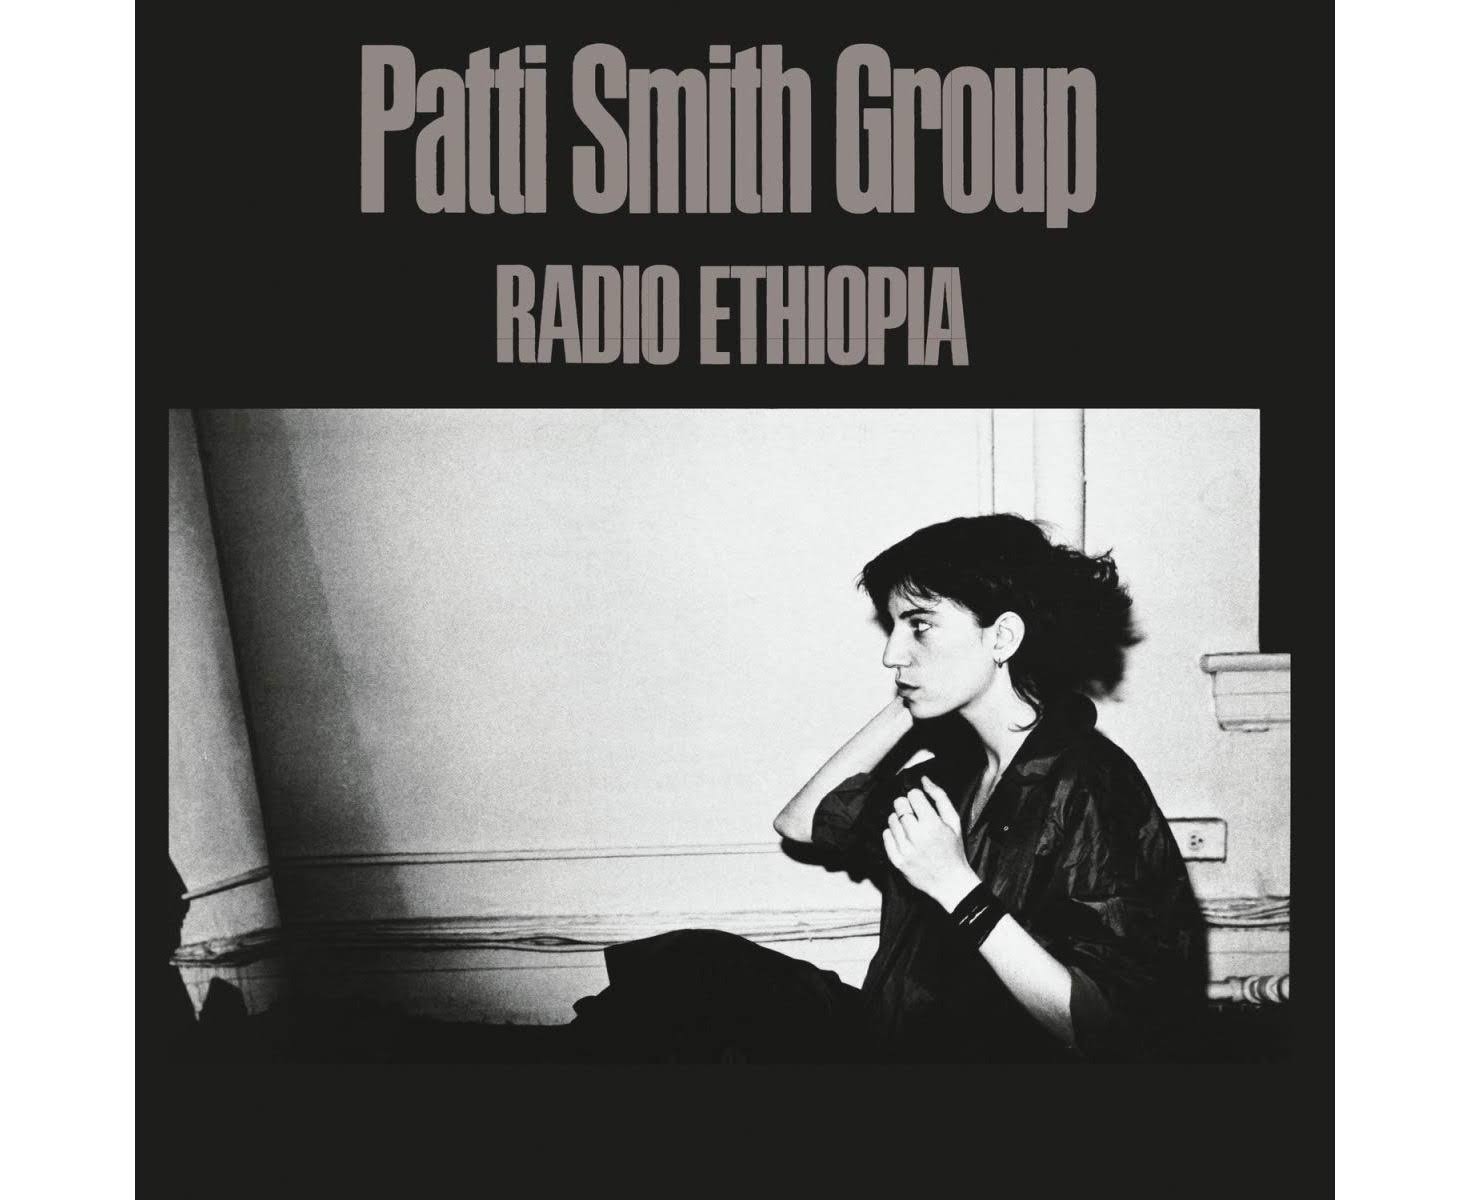 Radio Ethiopia - The Patti Smith Group